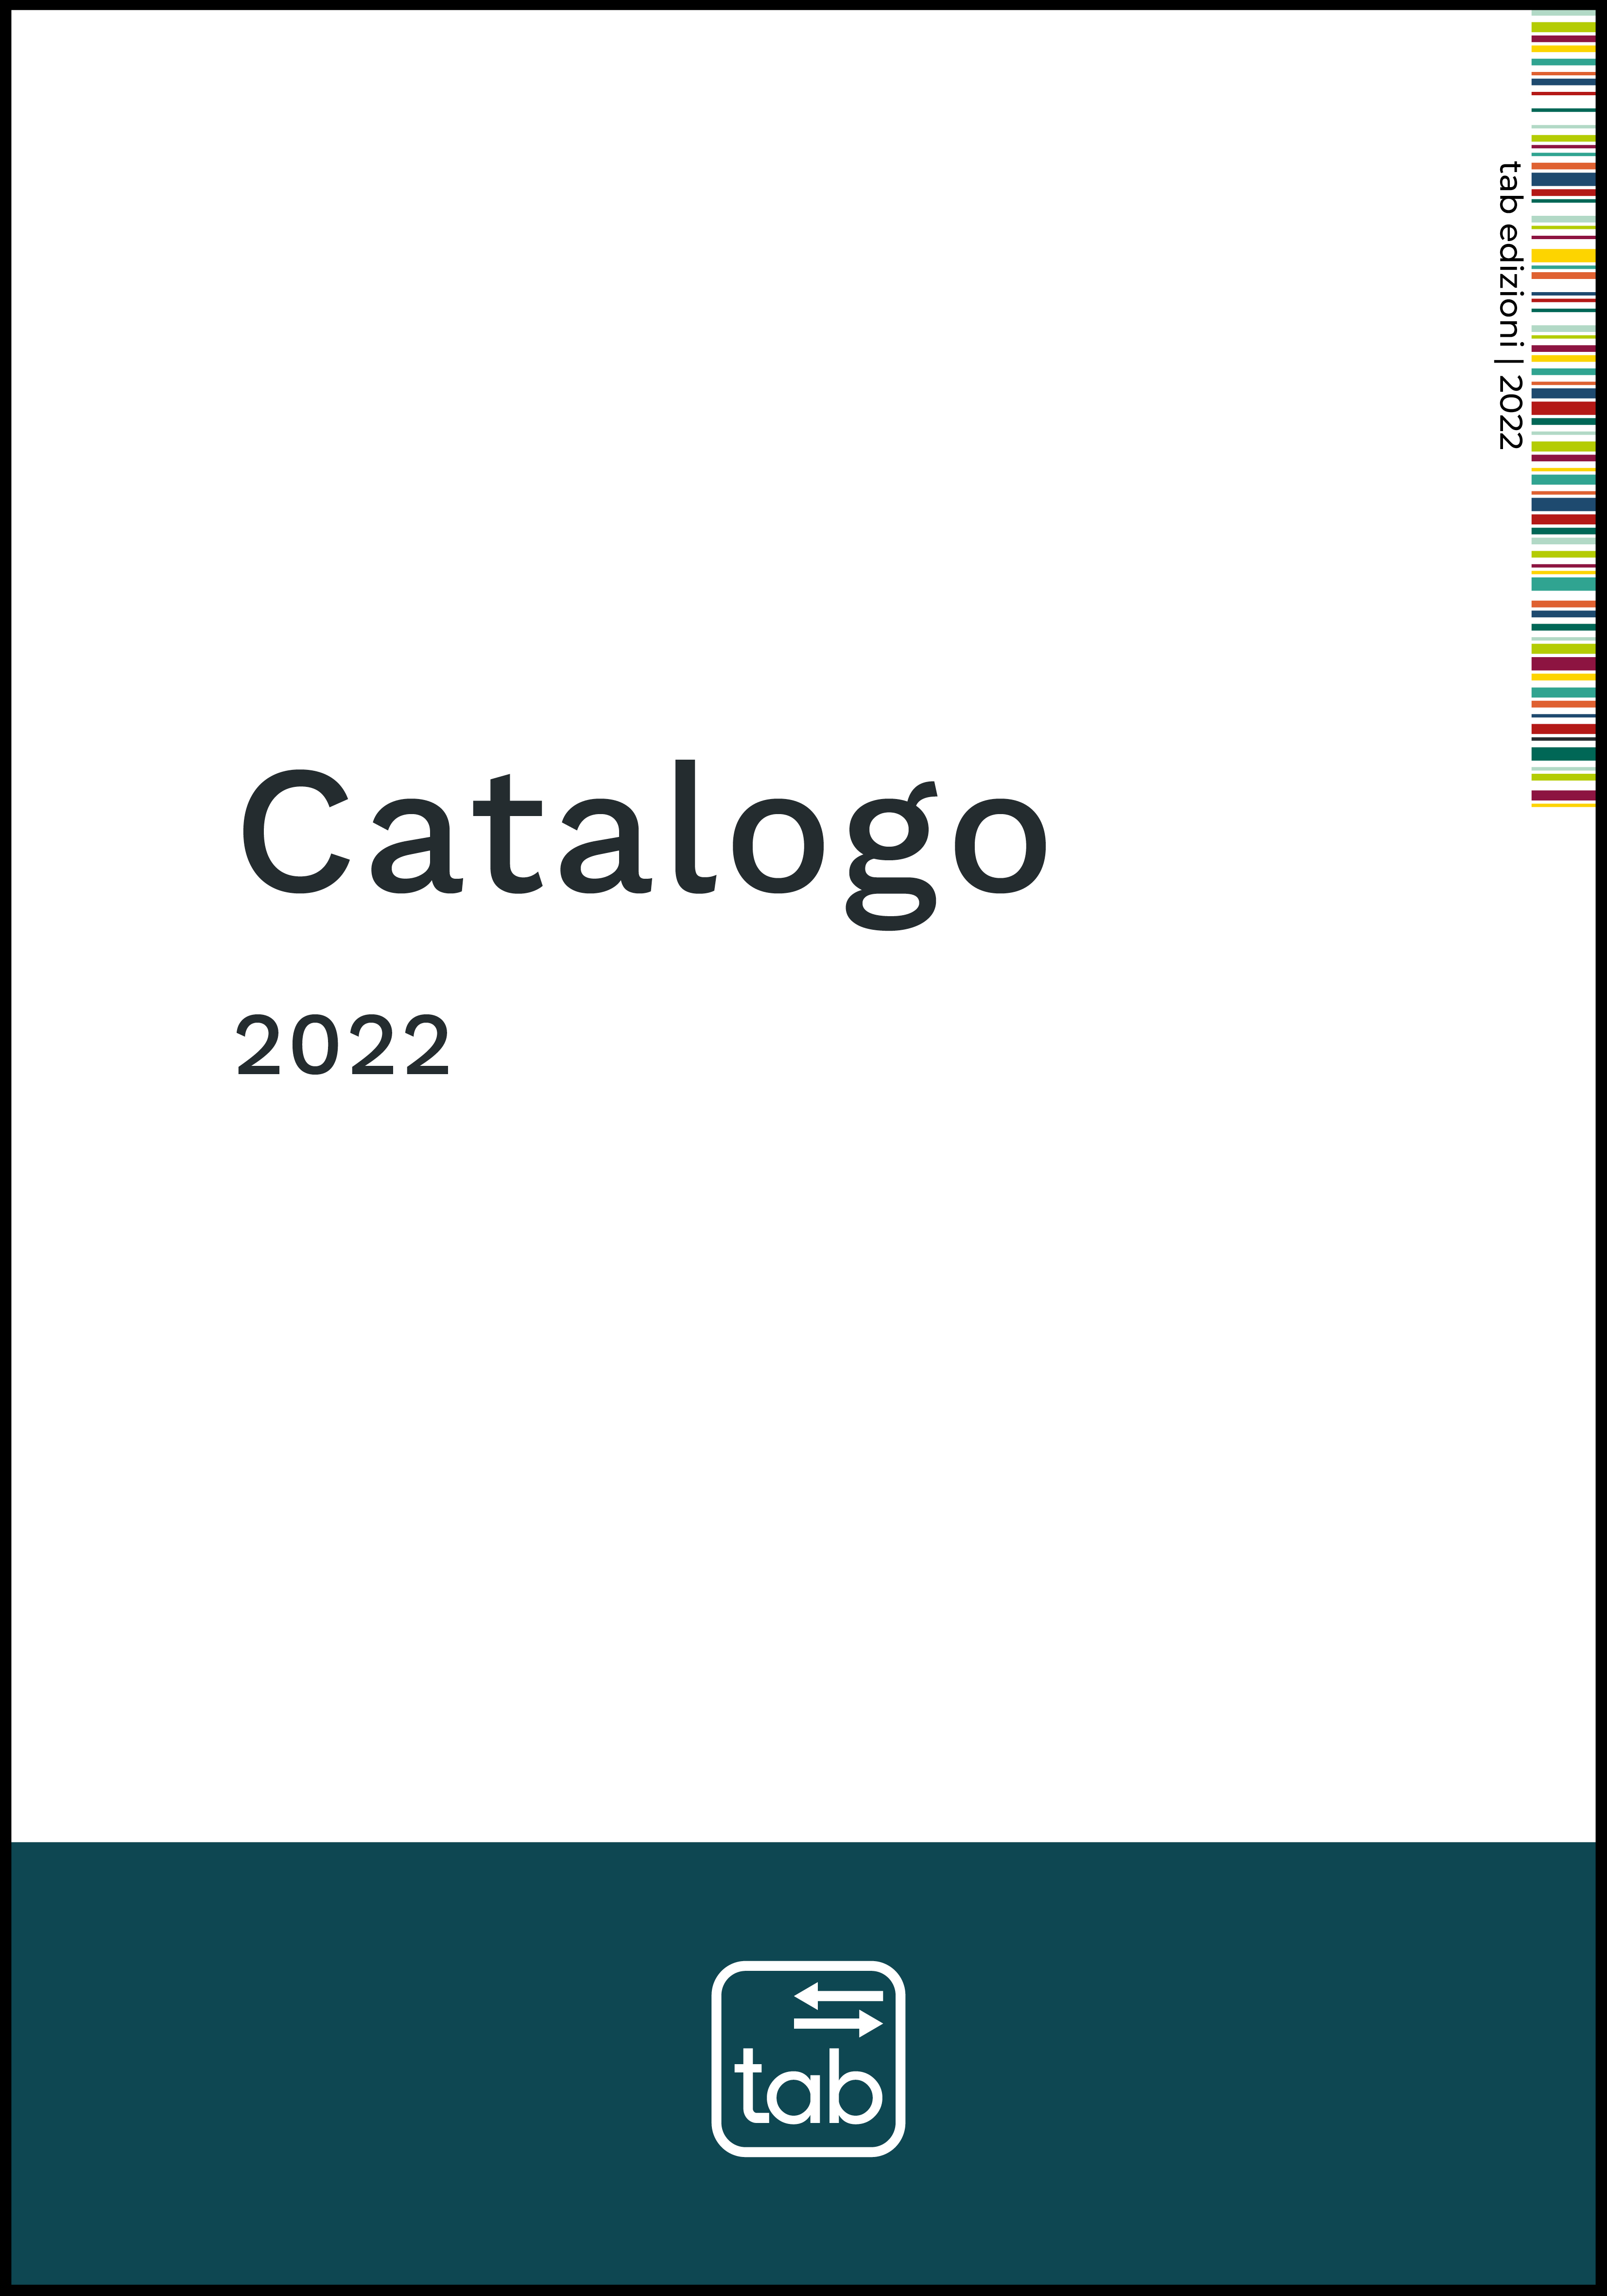 Catalogo 2022